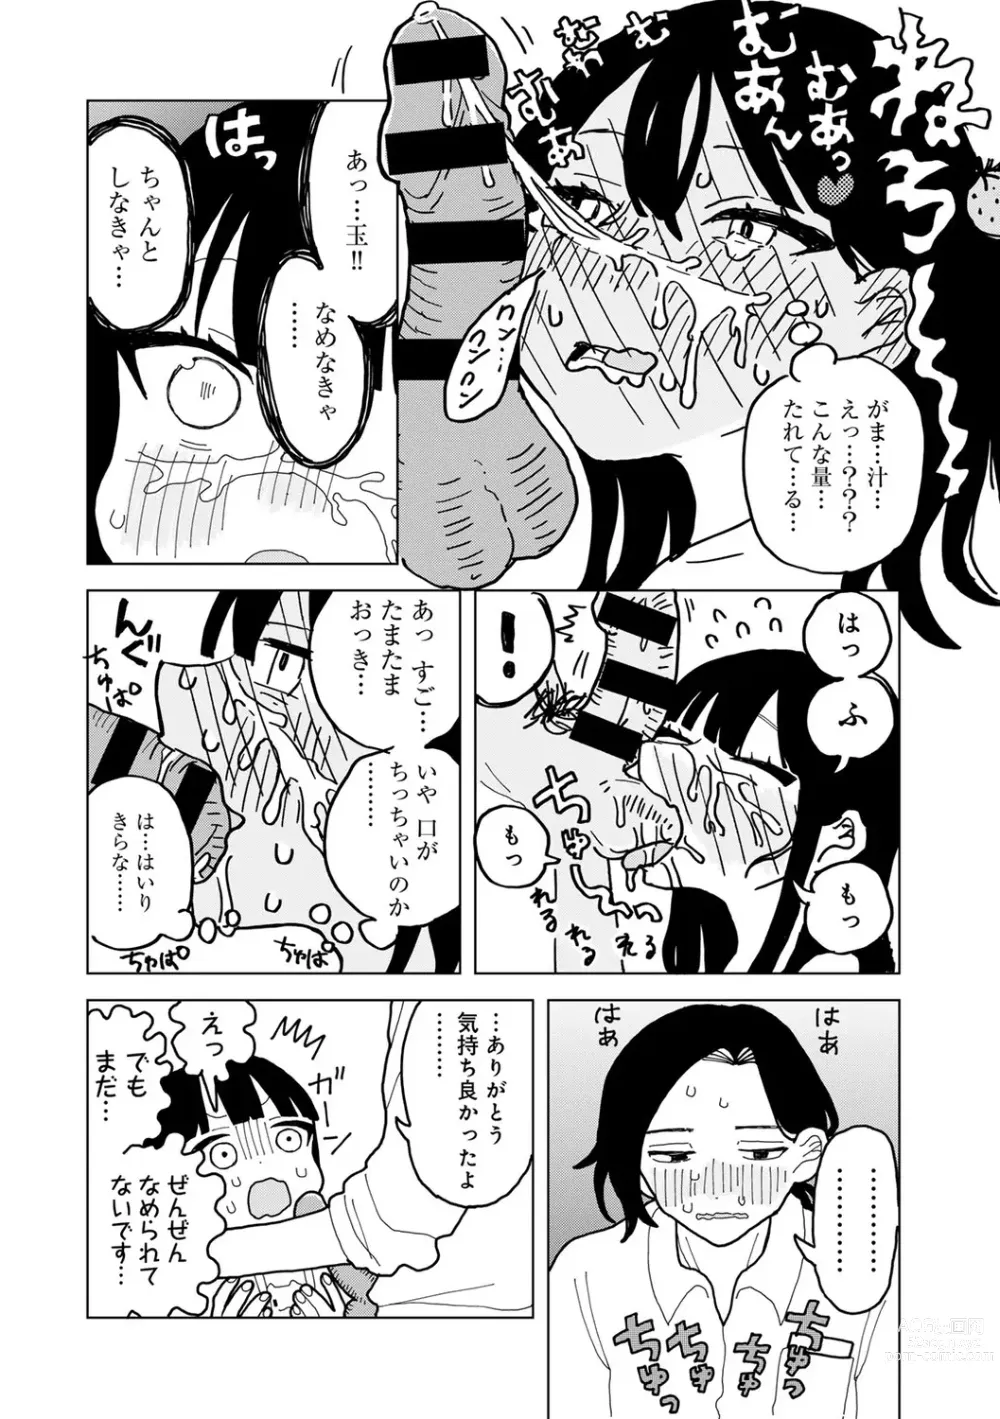 Page 182 of manga COMIC kisshug vol.3